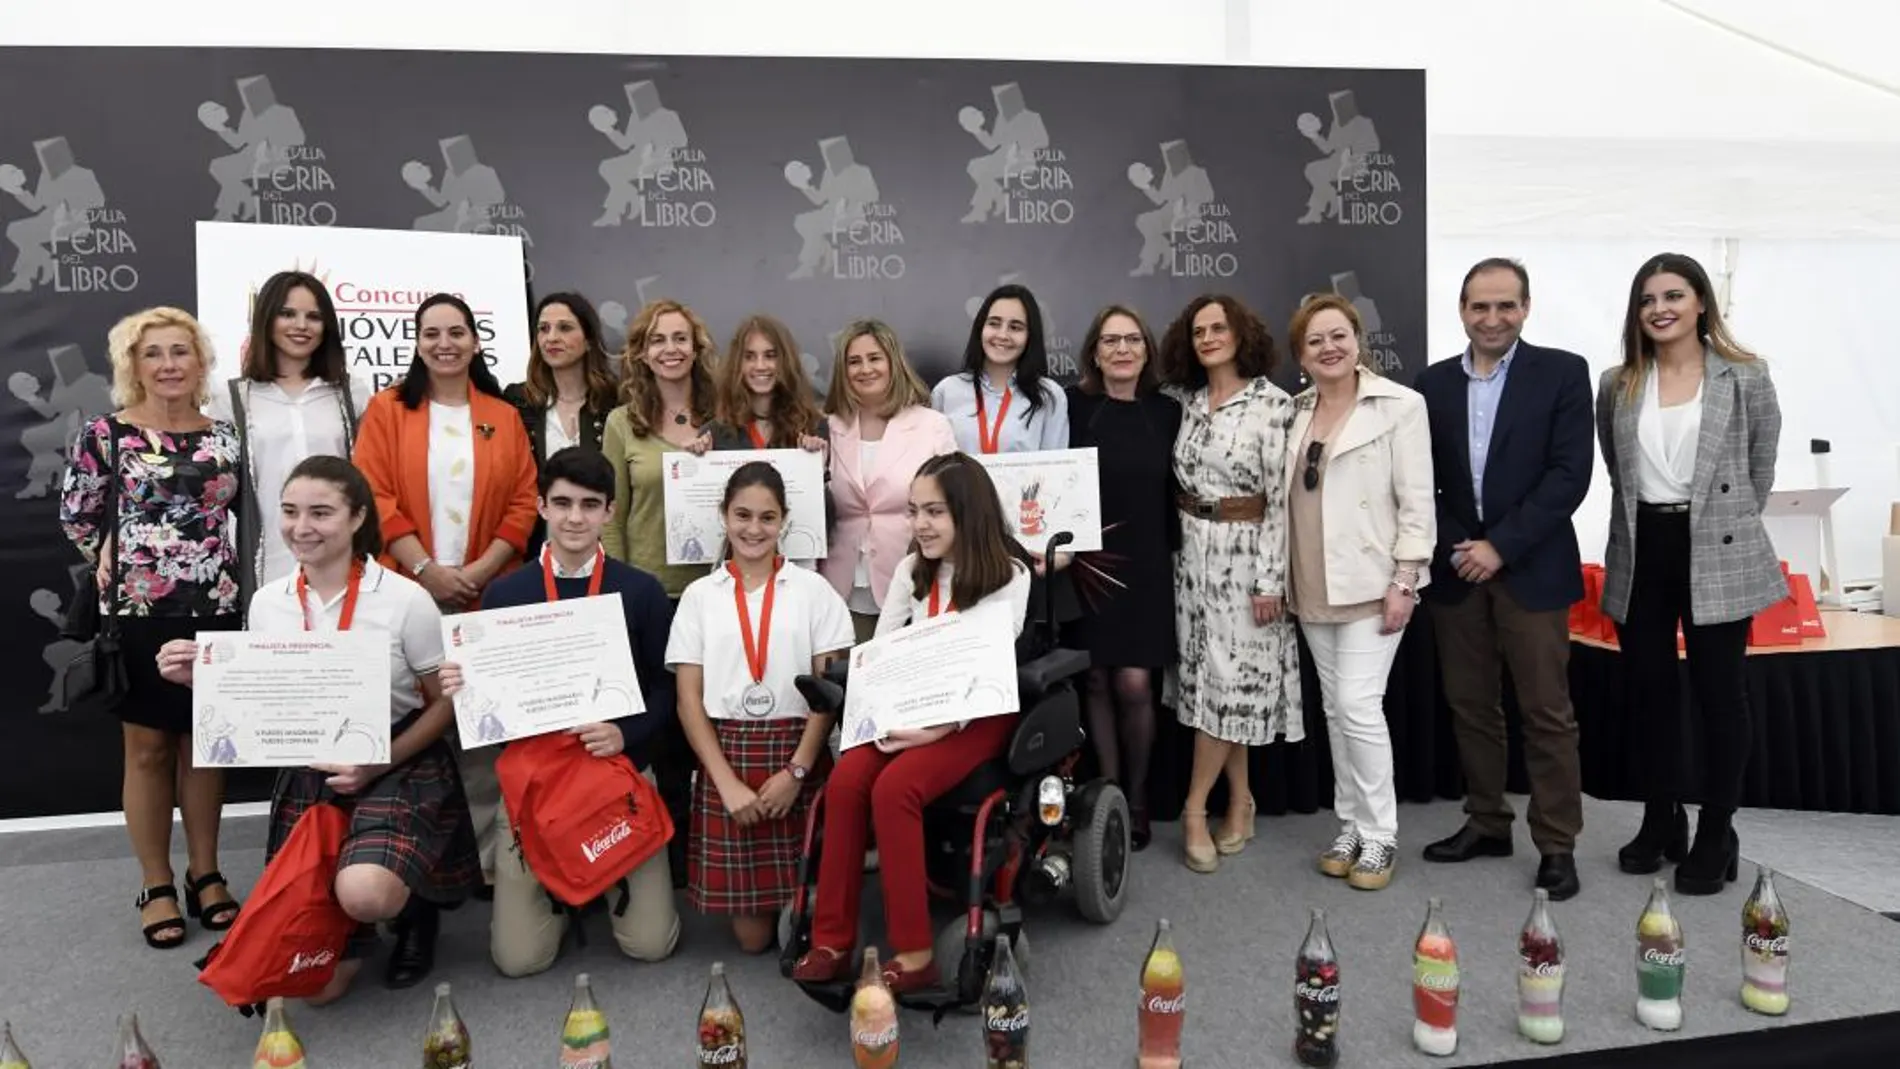 Coca-Cola premia a los jóvenes talentos del relato corto en la Feria del Libro de Sevilla